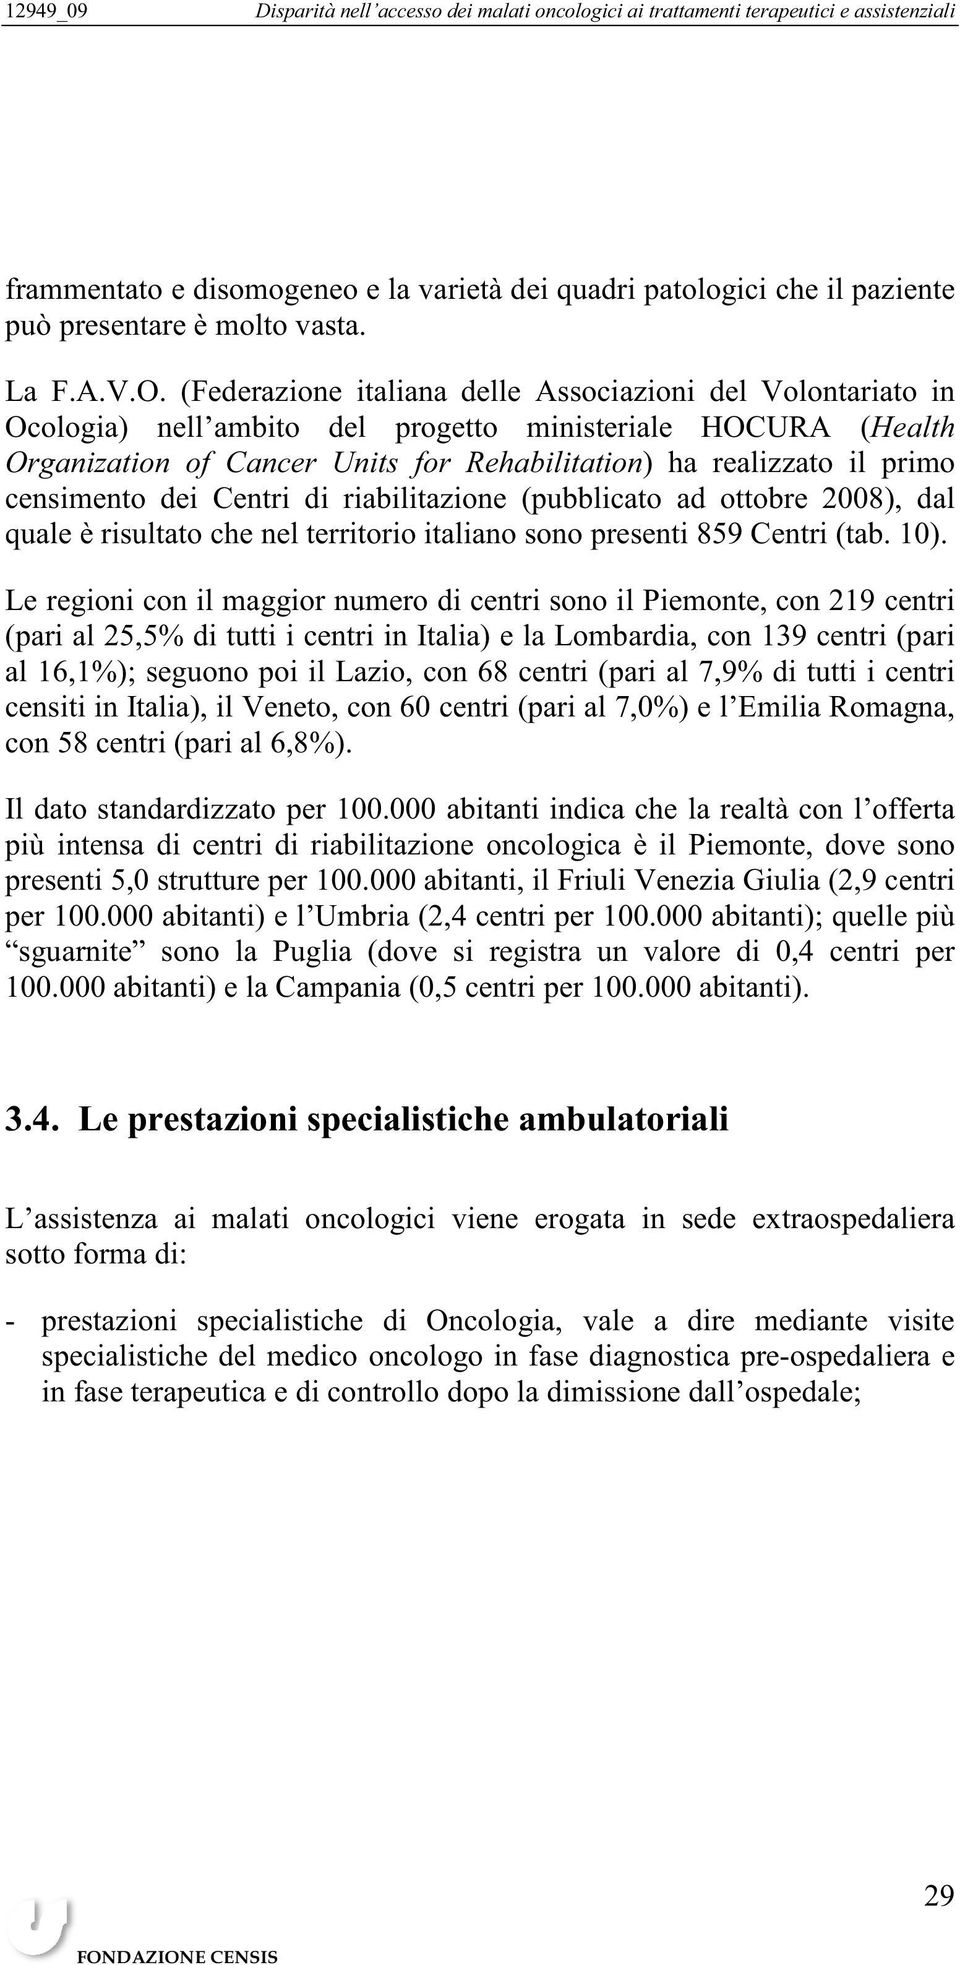 censimento dei Centri di riabilitazione (pubblicato ad ottobre 2008), dal quale è risultato che nel territorio italiano sono presenti 859 Centri (tab. 10).